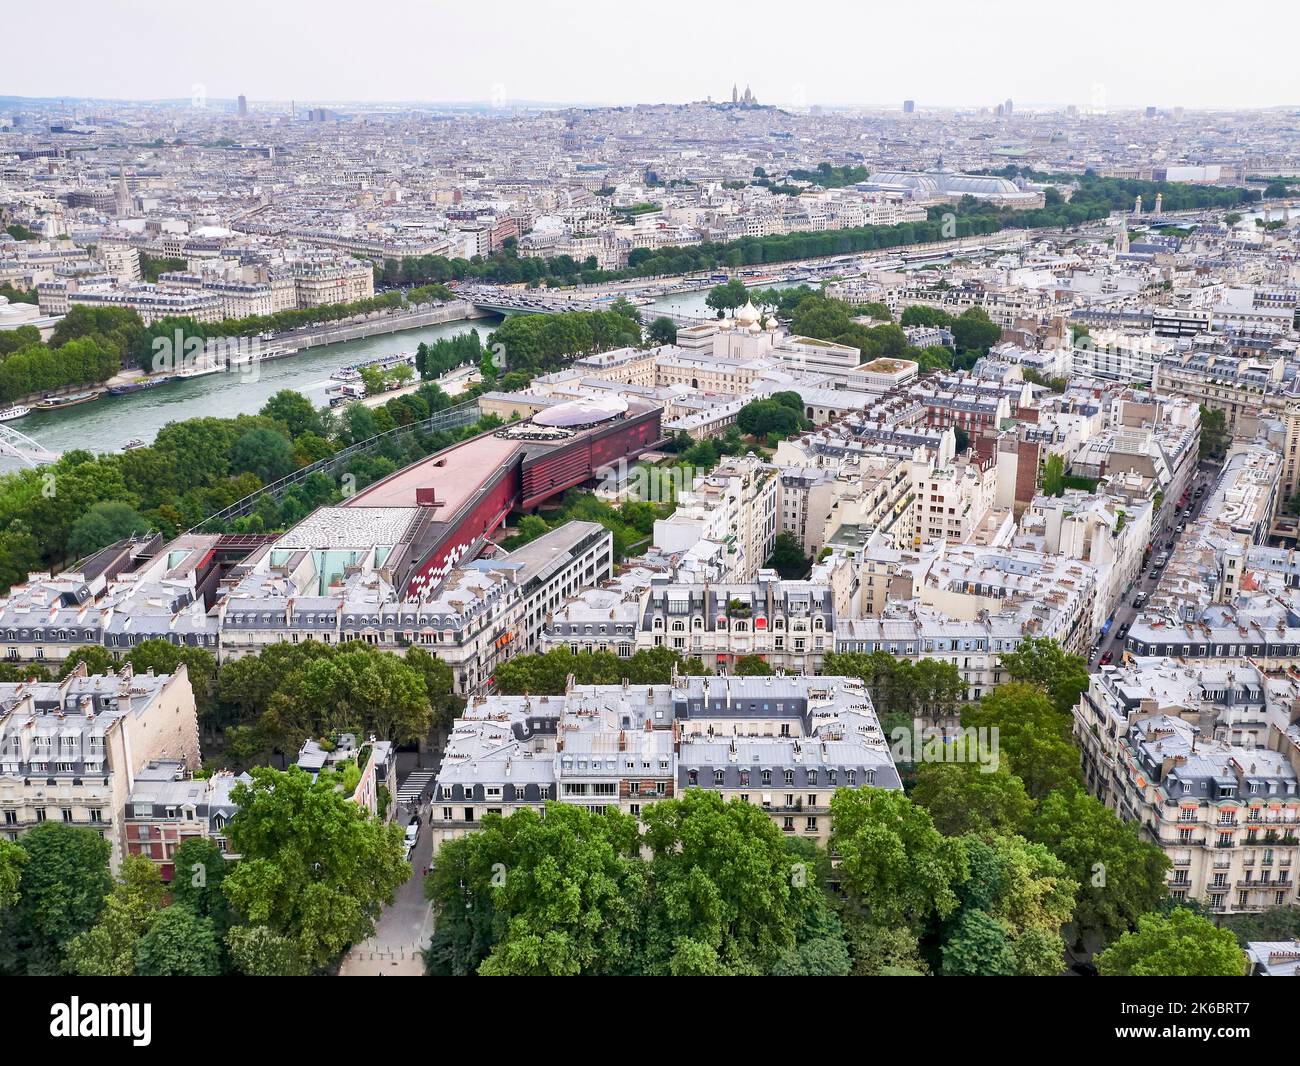 Paris (Frankreich): Panoramablick auf die Stadt vom Eiffelturm. Blick auf die Dachterrasse mit dem Museum „musee du quai Branly“, der Holy Trinity Cathedral und Stockfoto